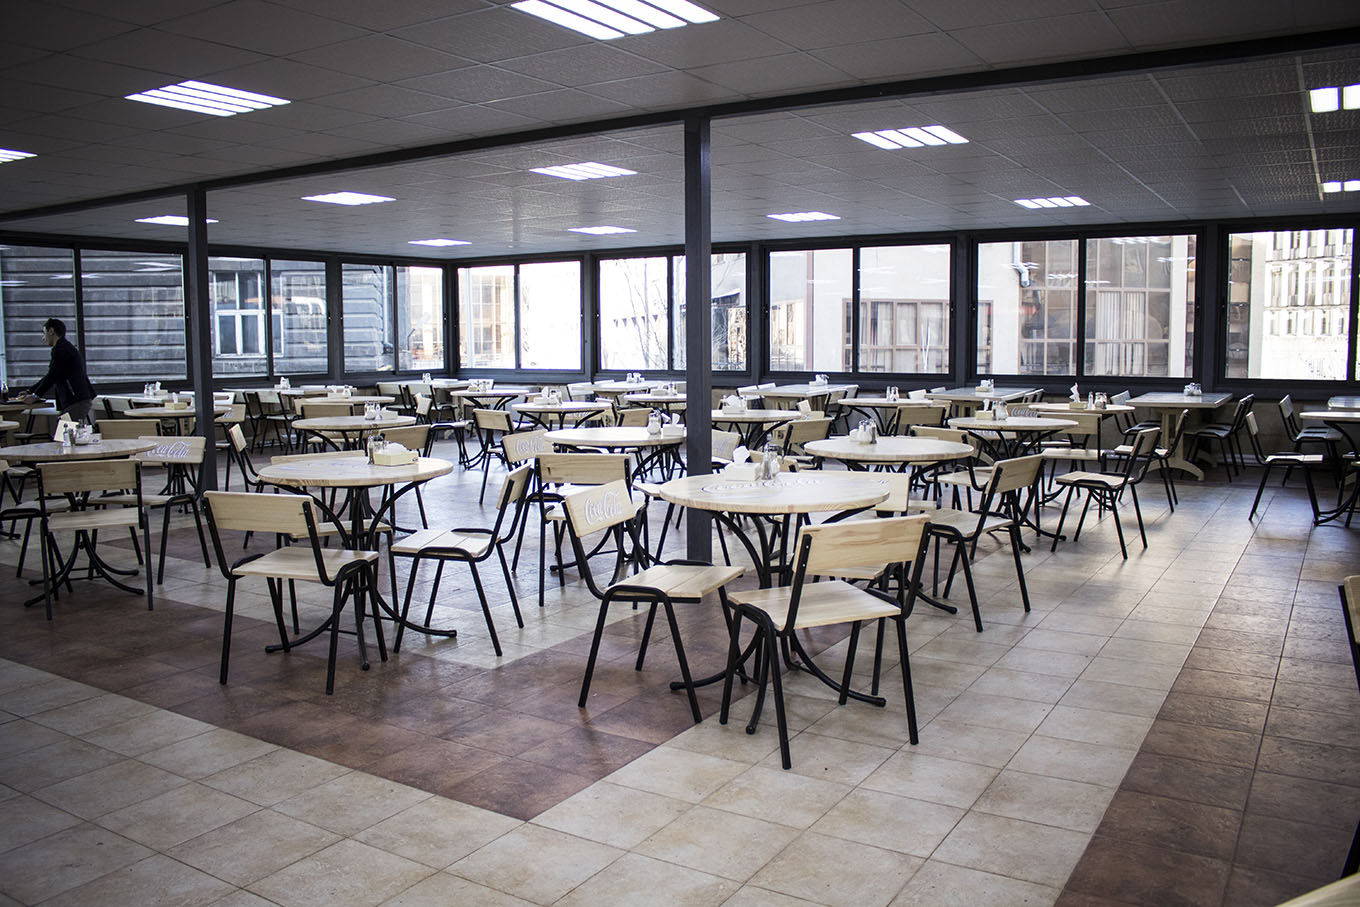 Շիրակի մարզի 128 դպրոցներ կապահովվեն ճաշարանների և խոհանոցների համար անհրաժեշտ գույքով և սարքավորումներով